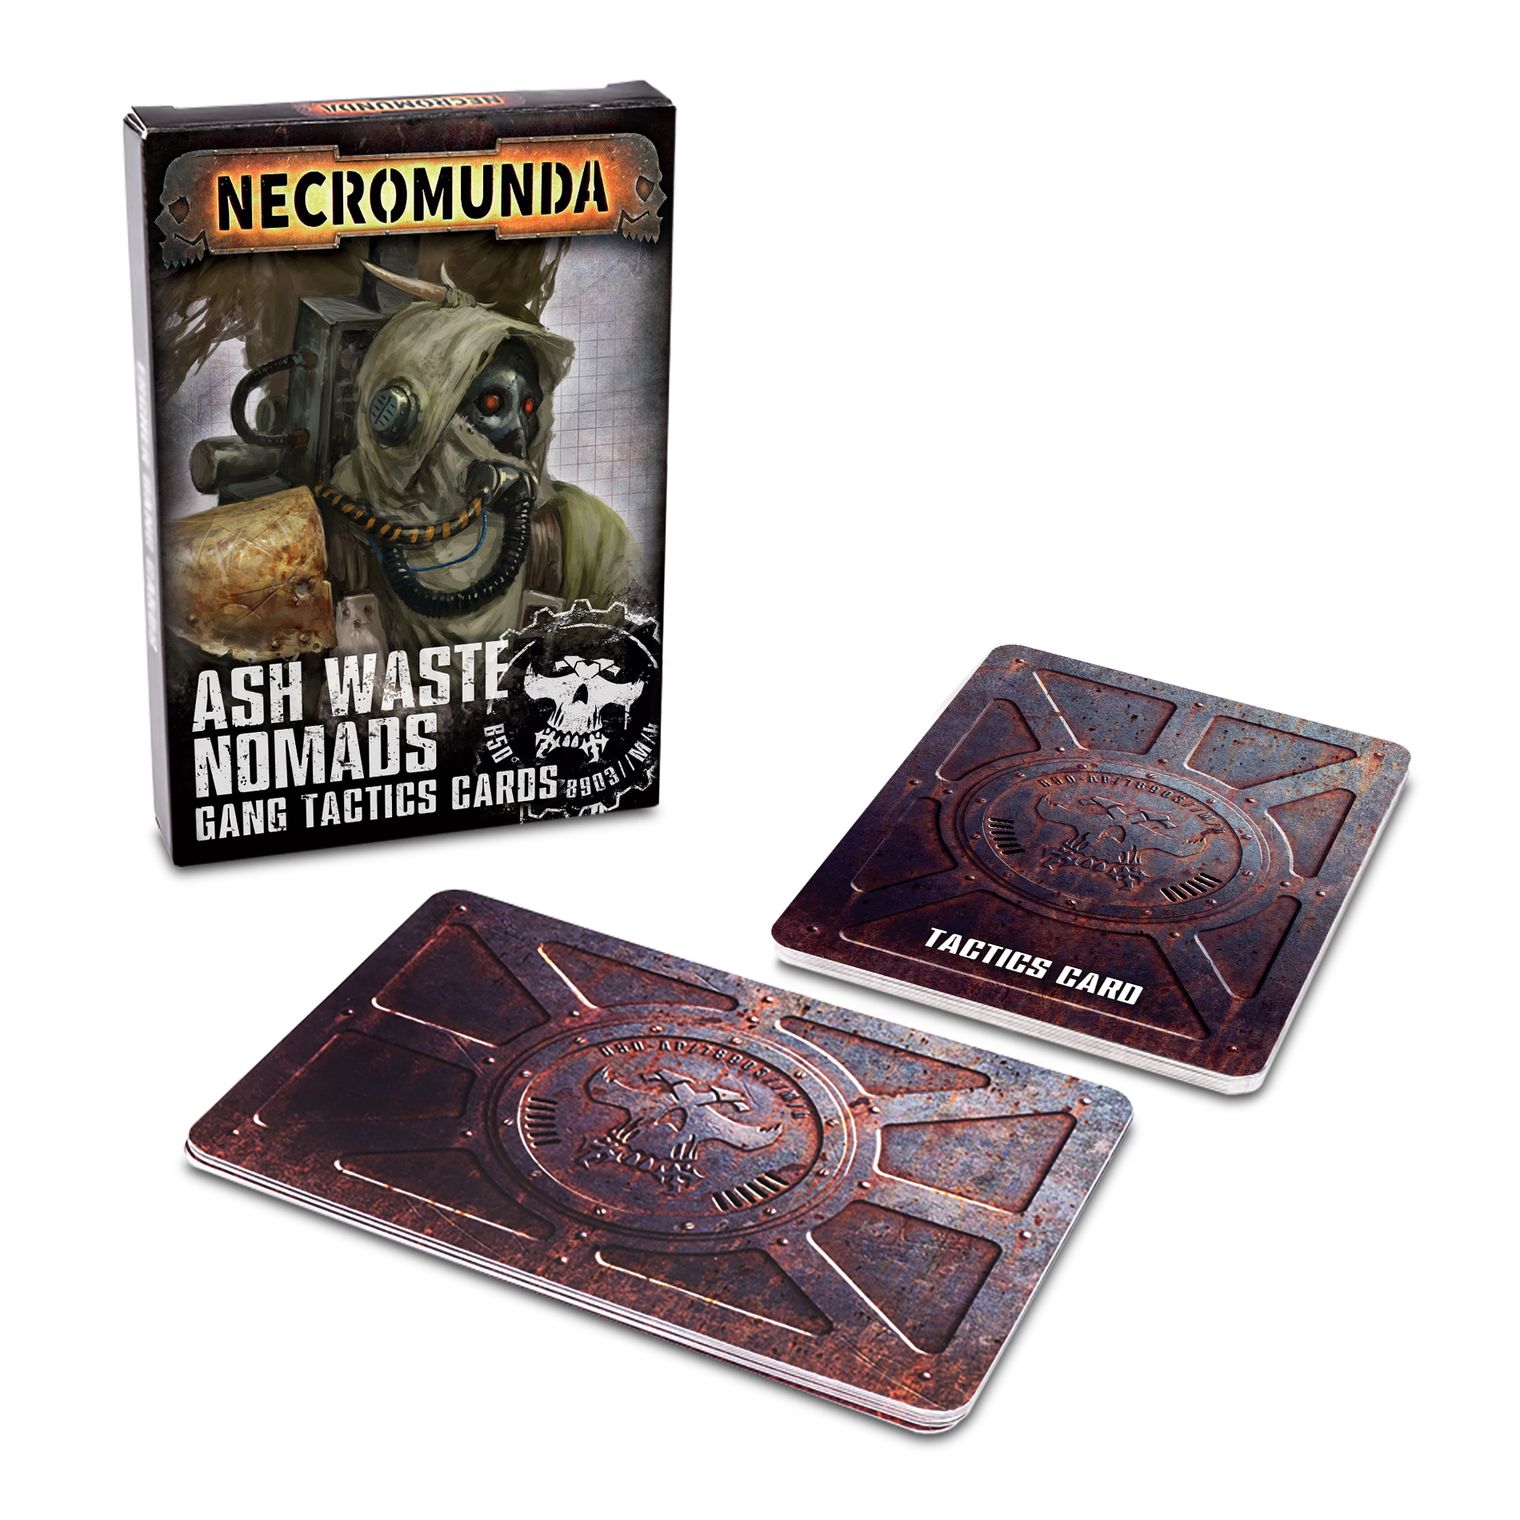 Thumbnail van een extra afbeelding van het spel Necromunda: Ash Waste Nomads Gang Tactics Cards